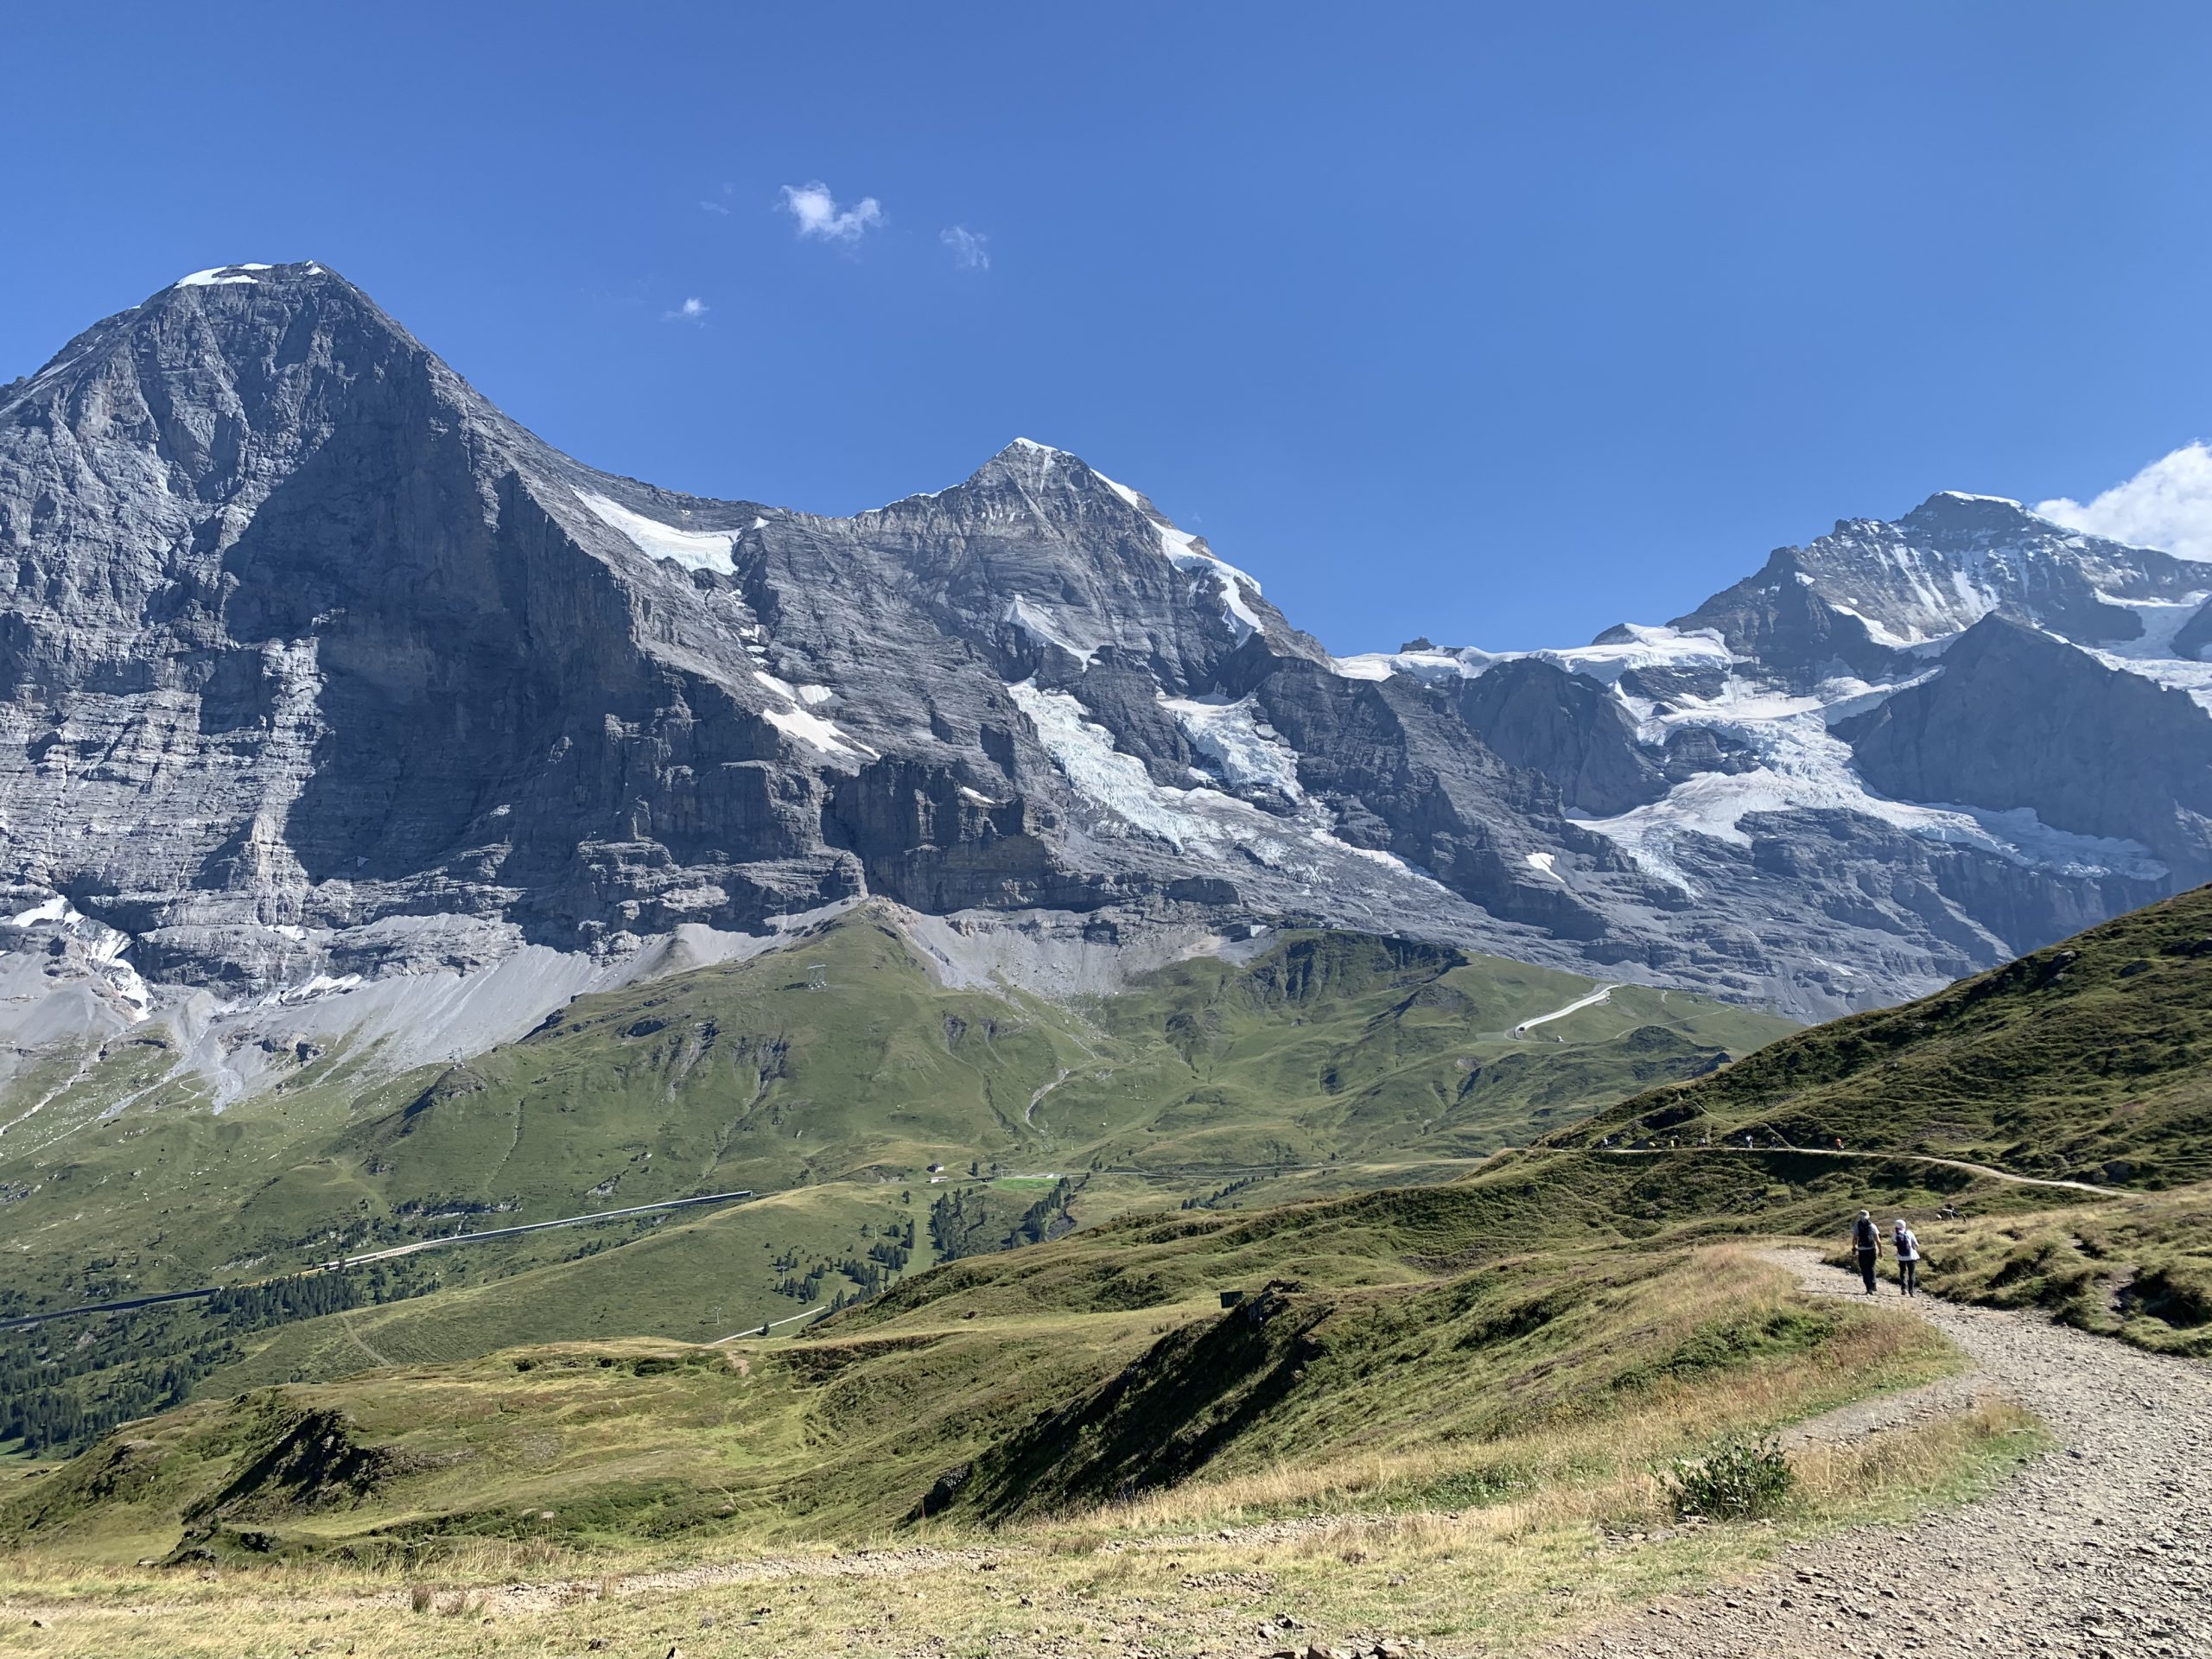 Märchenhafter Ausblick auf dem Panoramaweg am Dreigestirn Eiger, Mönch und Jungfrau in der Schweiz